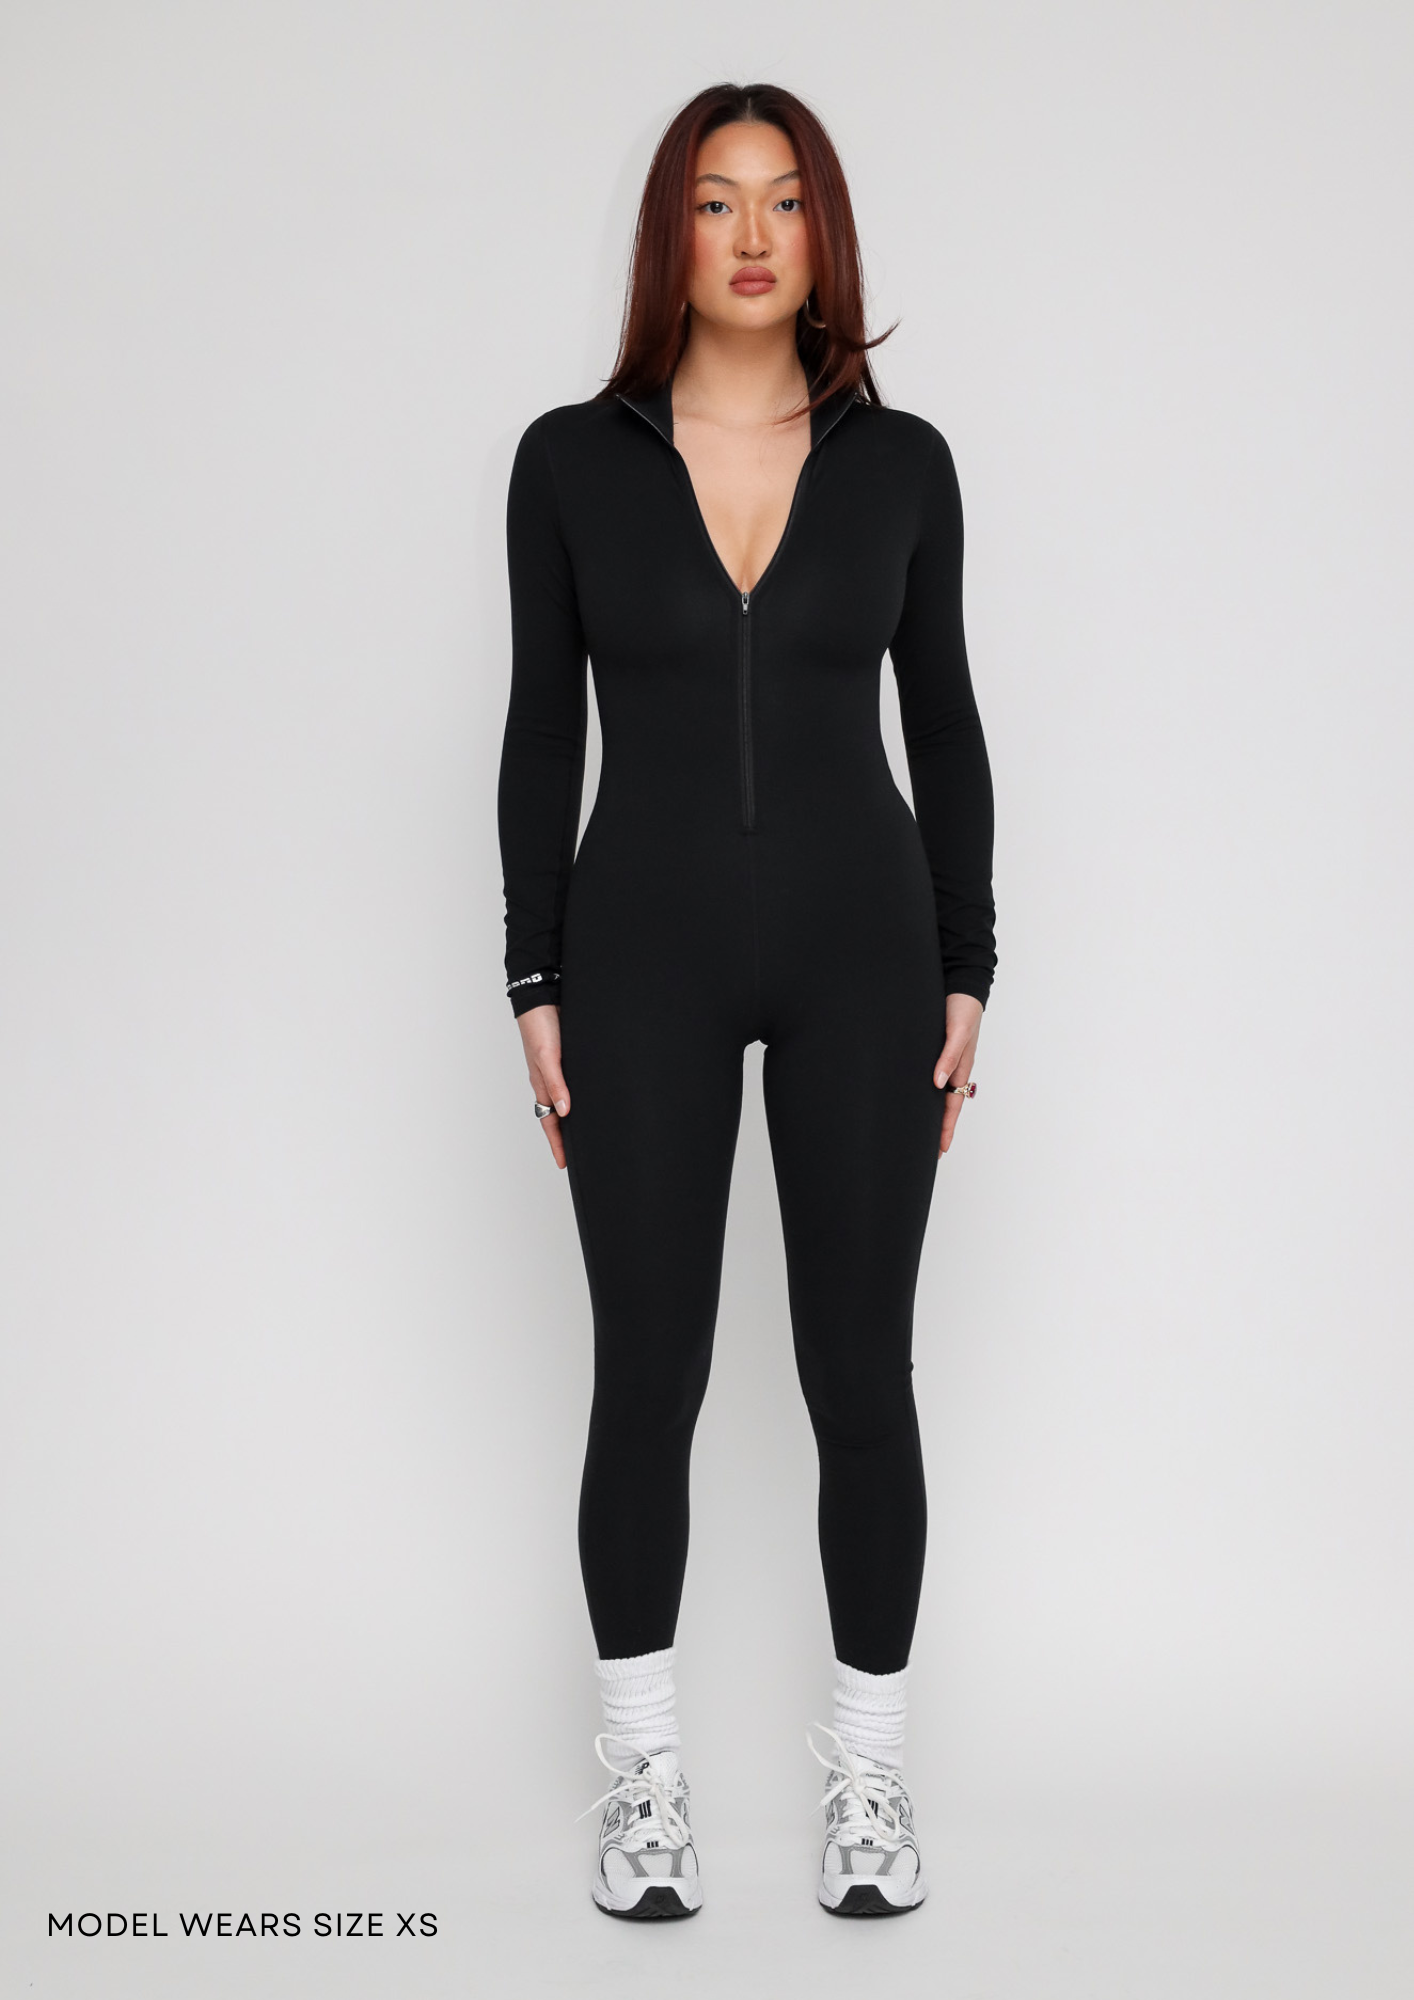 Naphy Women's Body Suit, Long Sleeve, Shaping Underwear, Body Shaper, –  EveryMarket